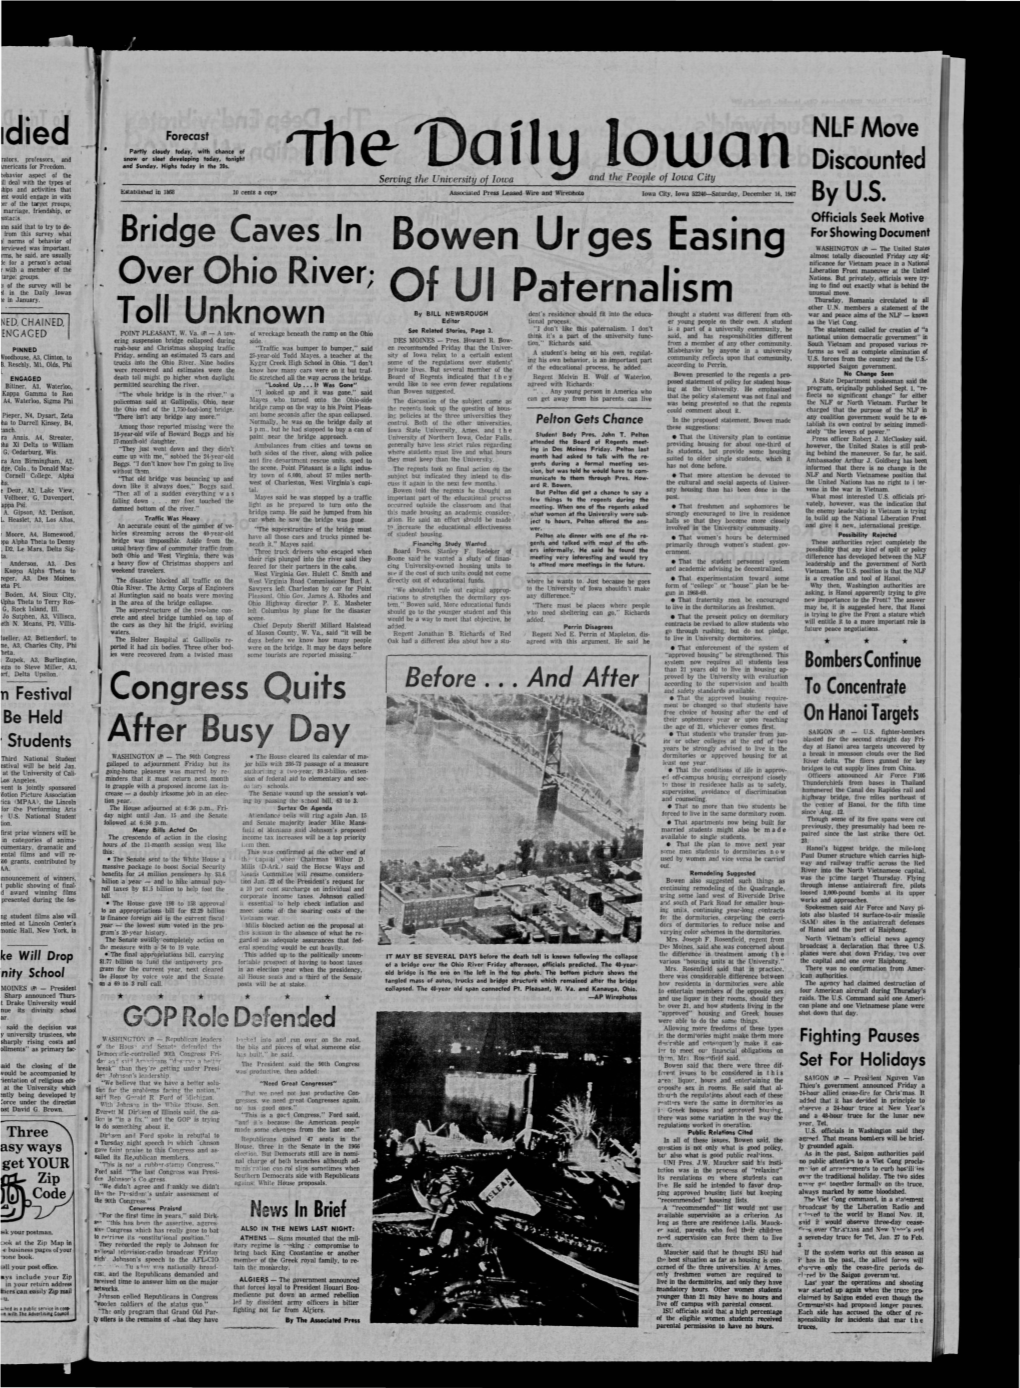 Daily Iowan (Iowa City, Iowa), 1967-12-16